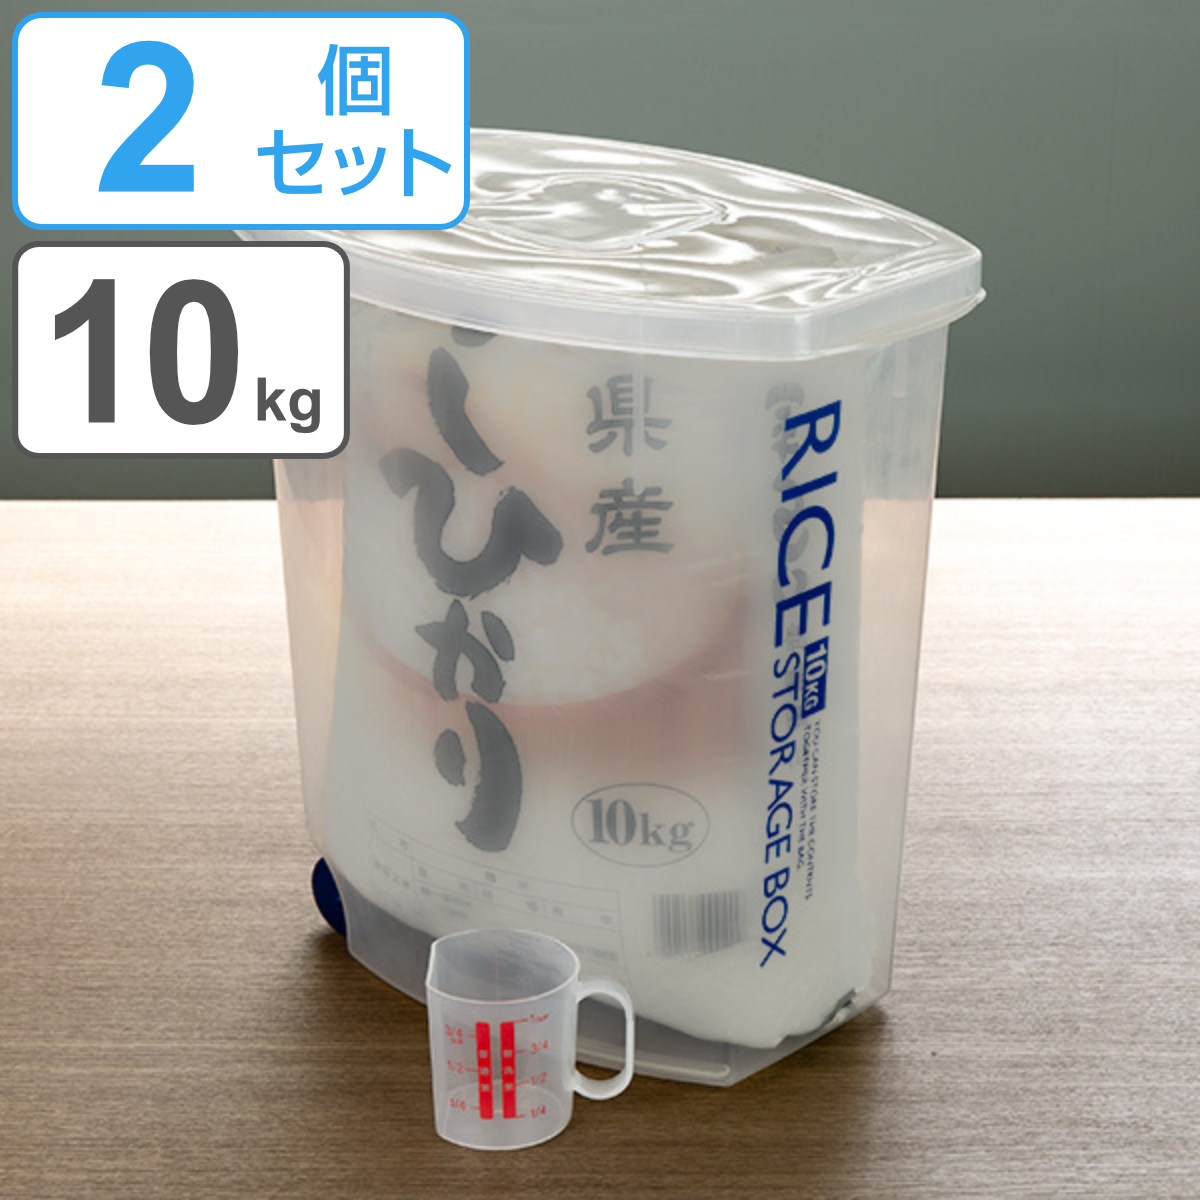 米びつ 袋のまんま防虫米びつ 10kg 計量カップ付 防虫剤付き 2個セット